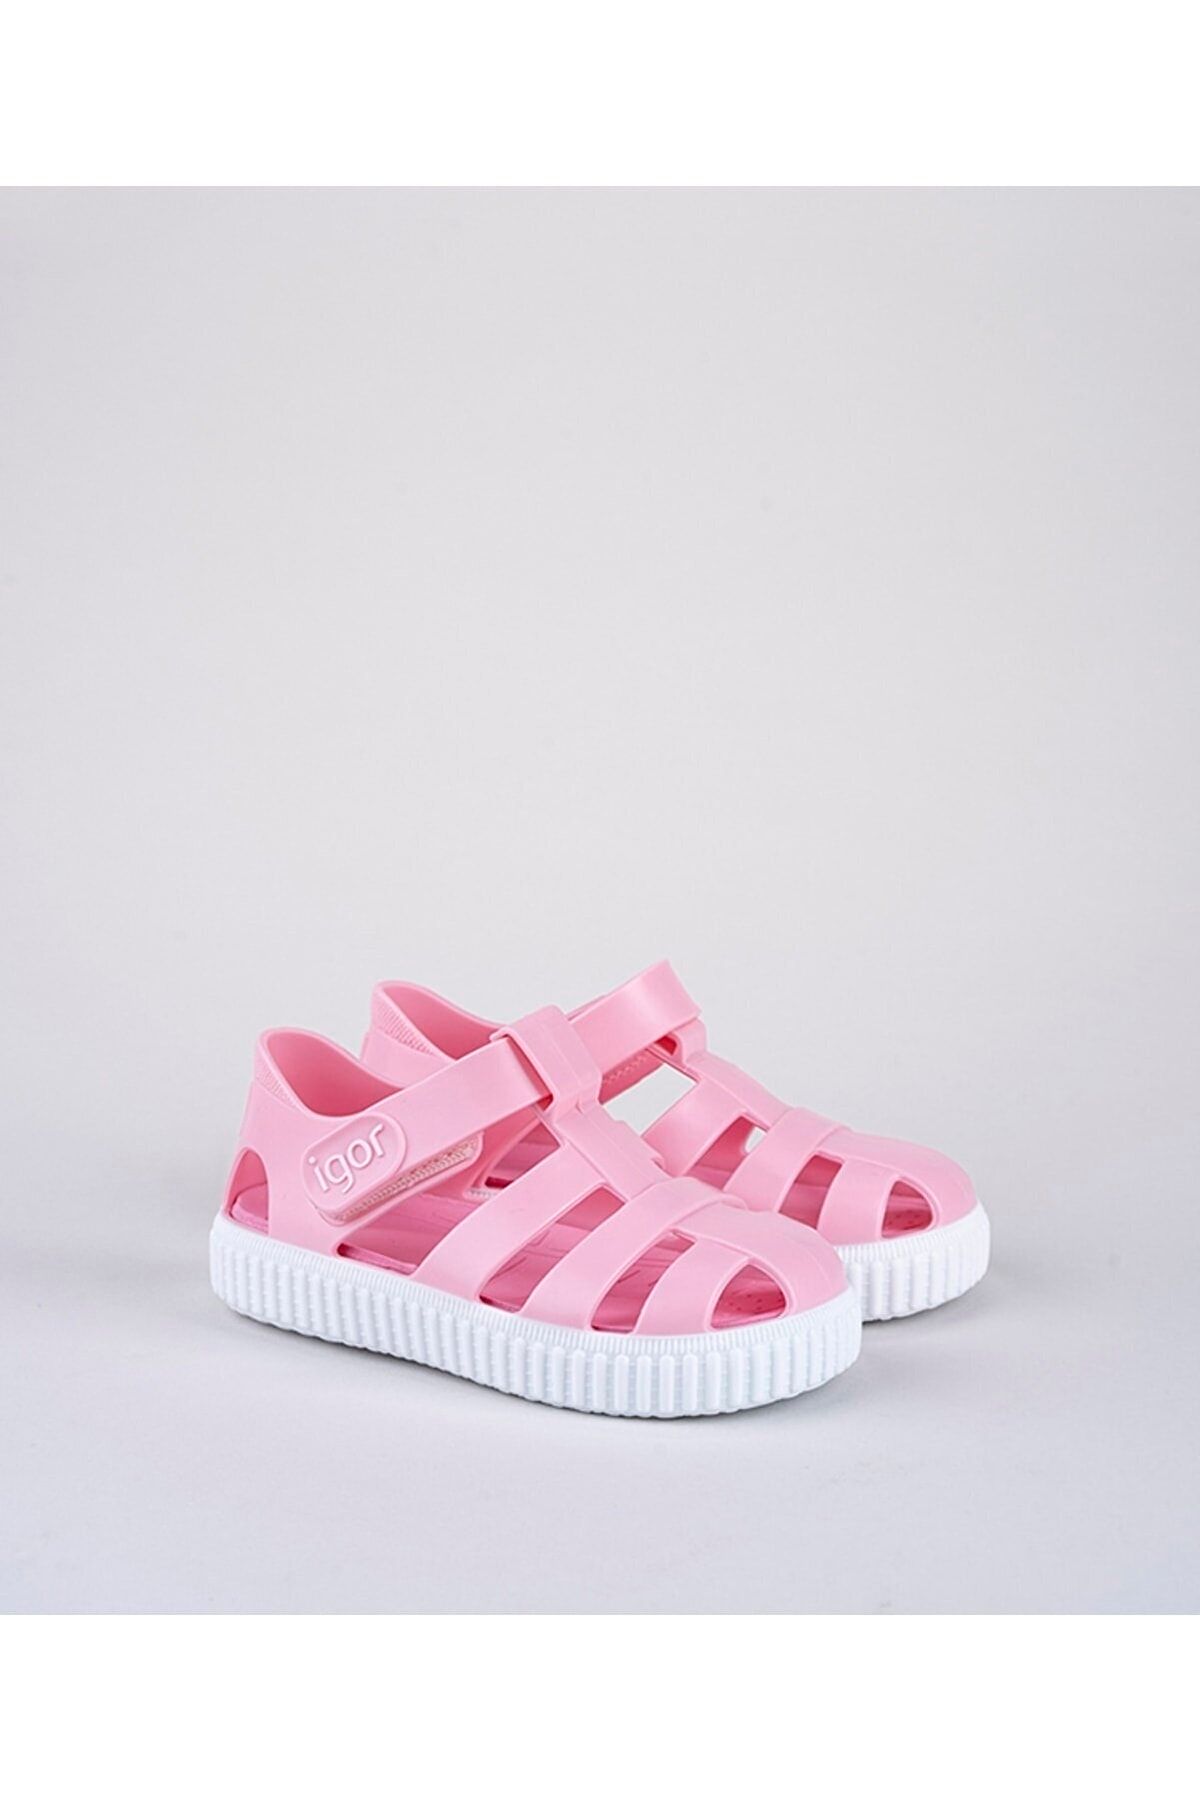 IGOR Nıco Rosa/pink Çocuk Sandalet